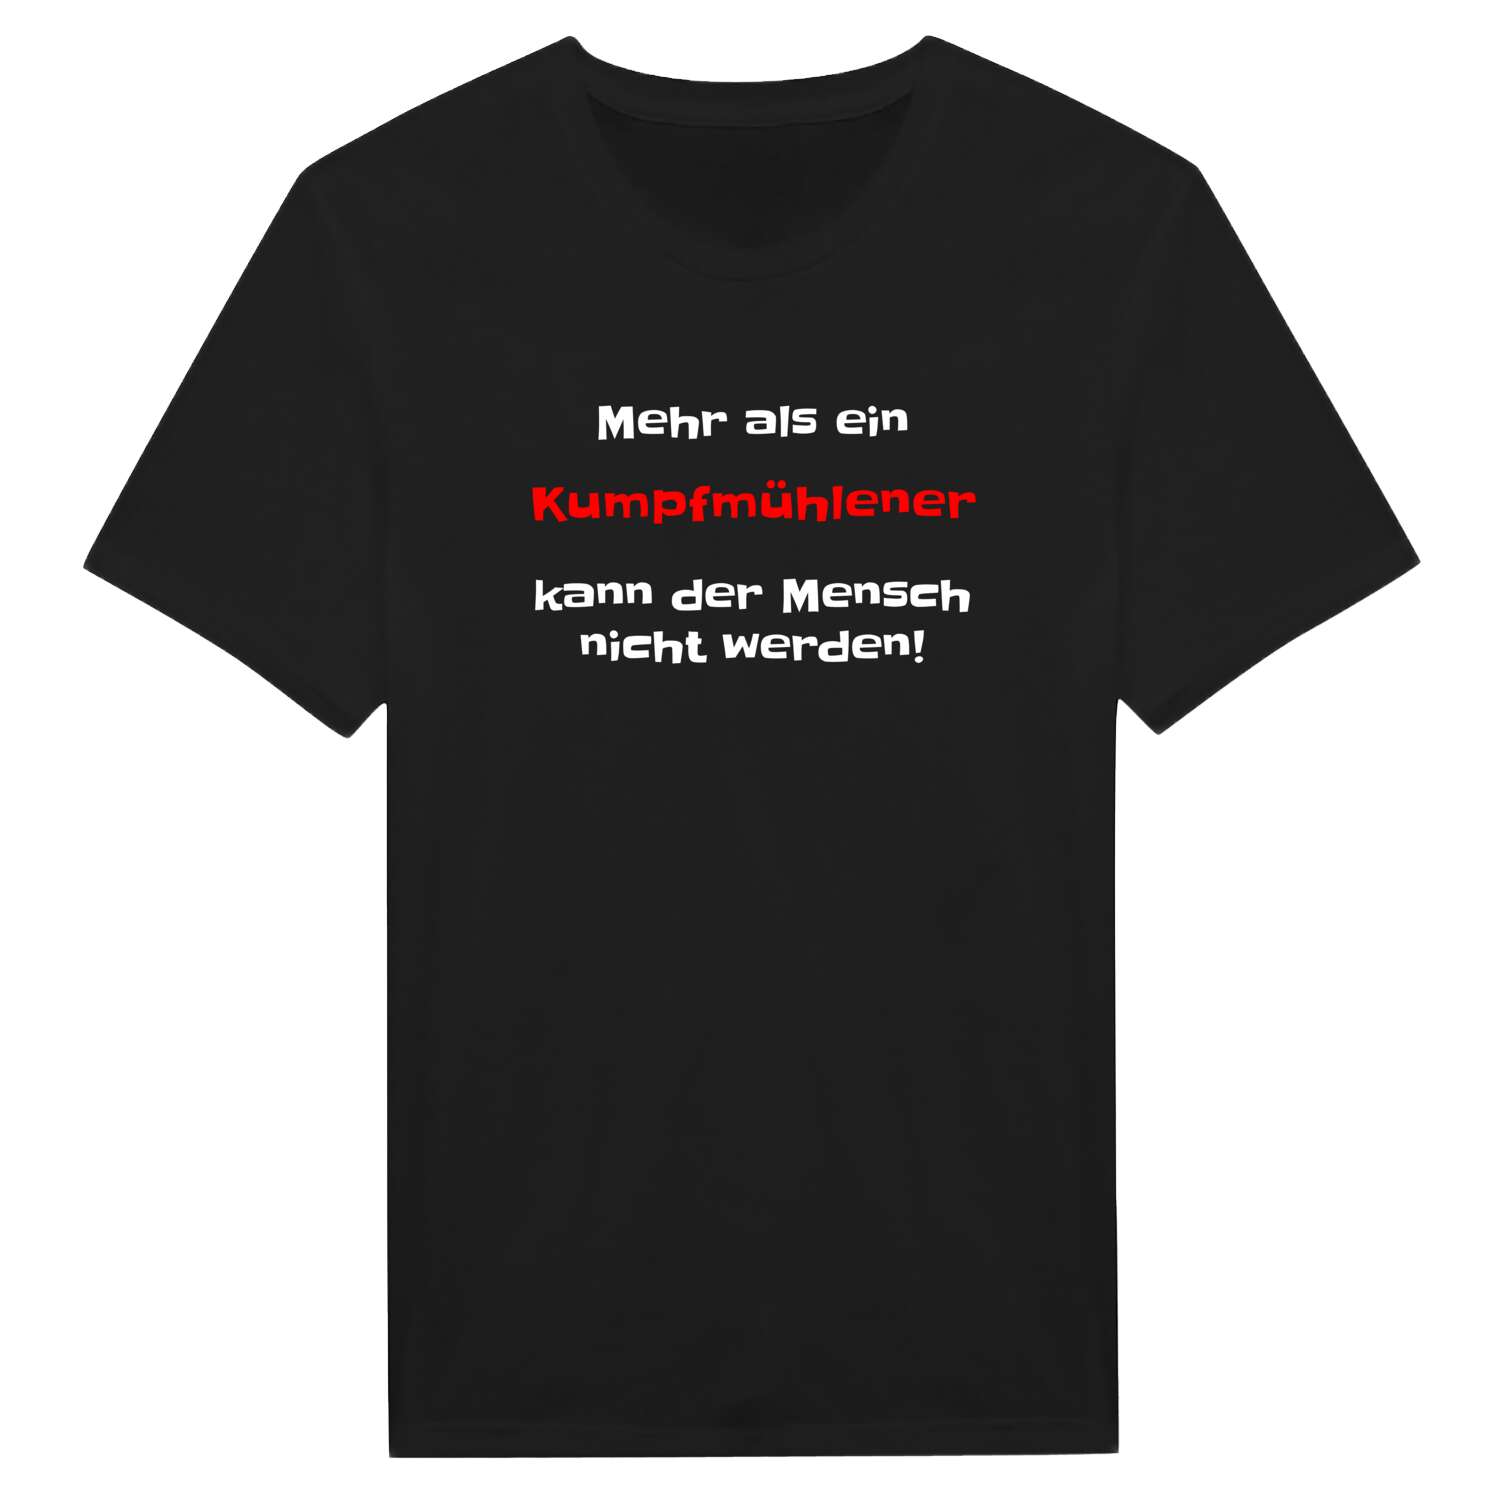 Kumpfmühle T-Shirt »Mehr als ein«